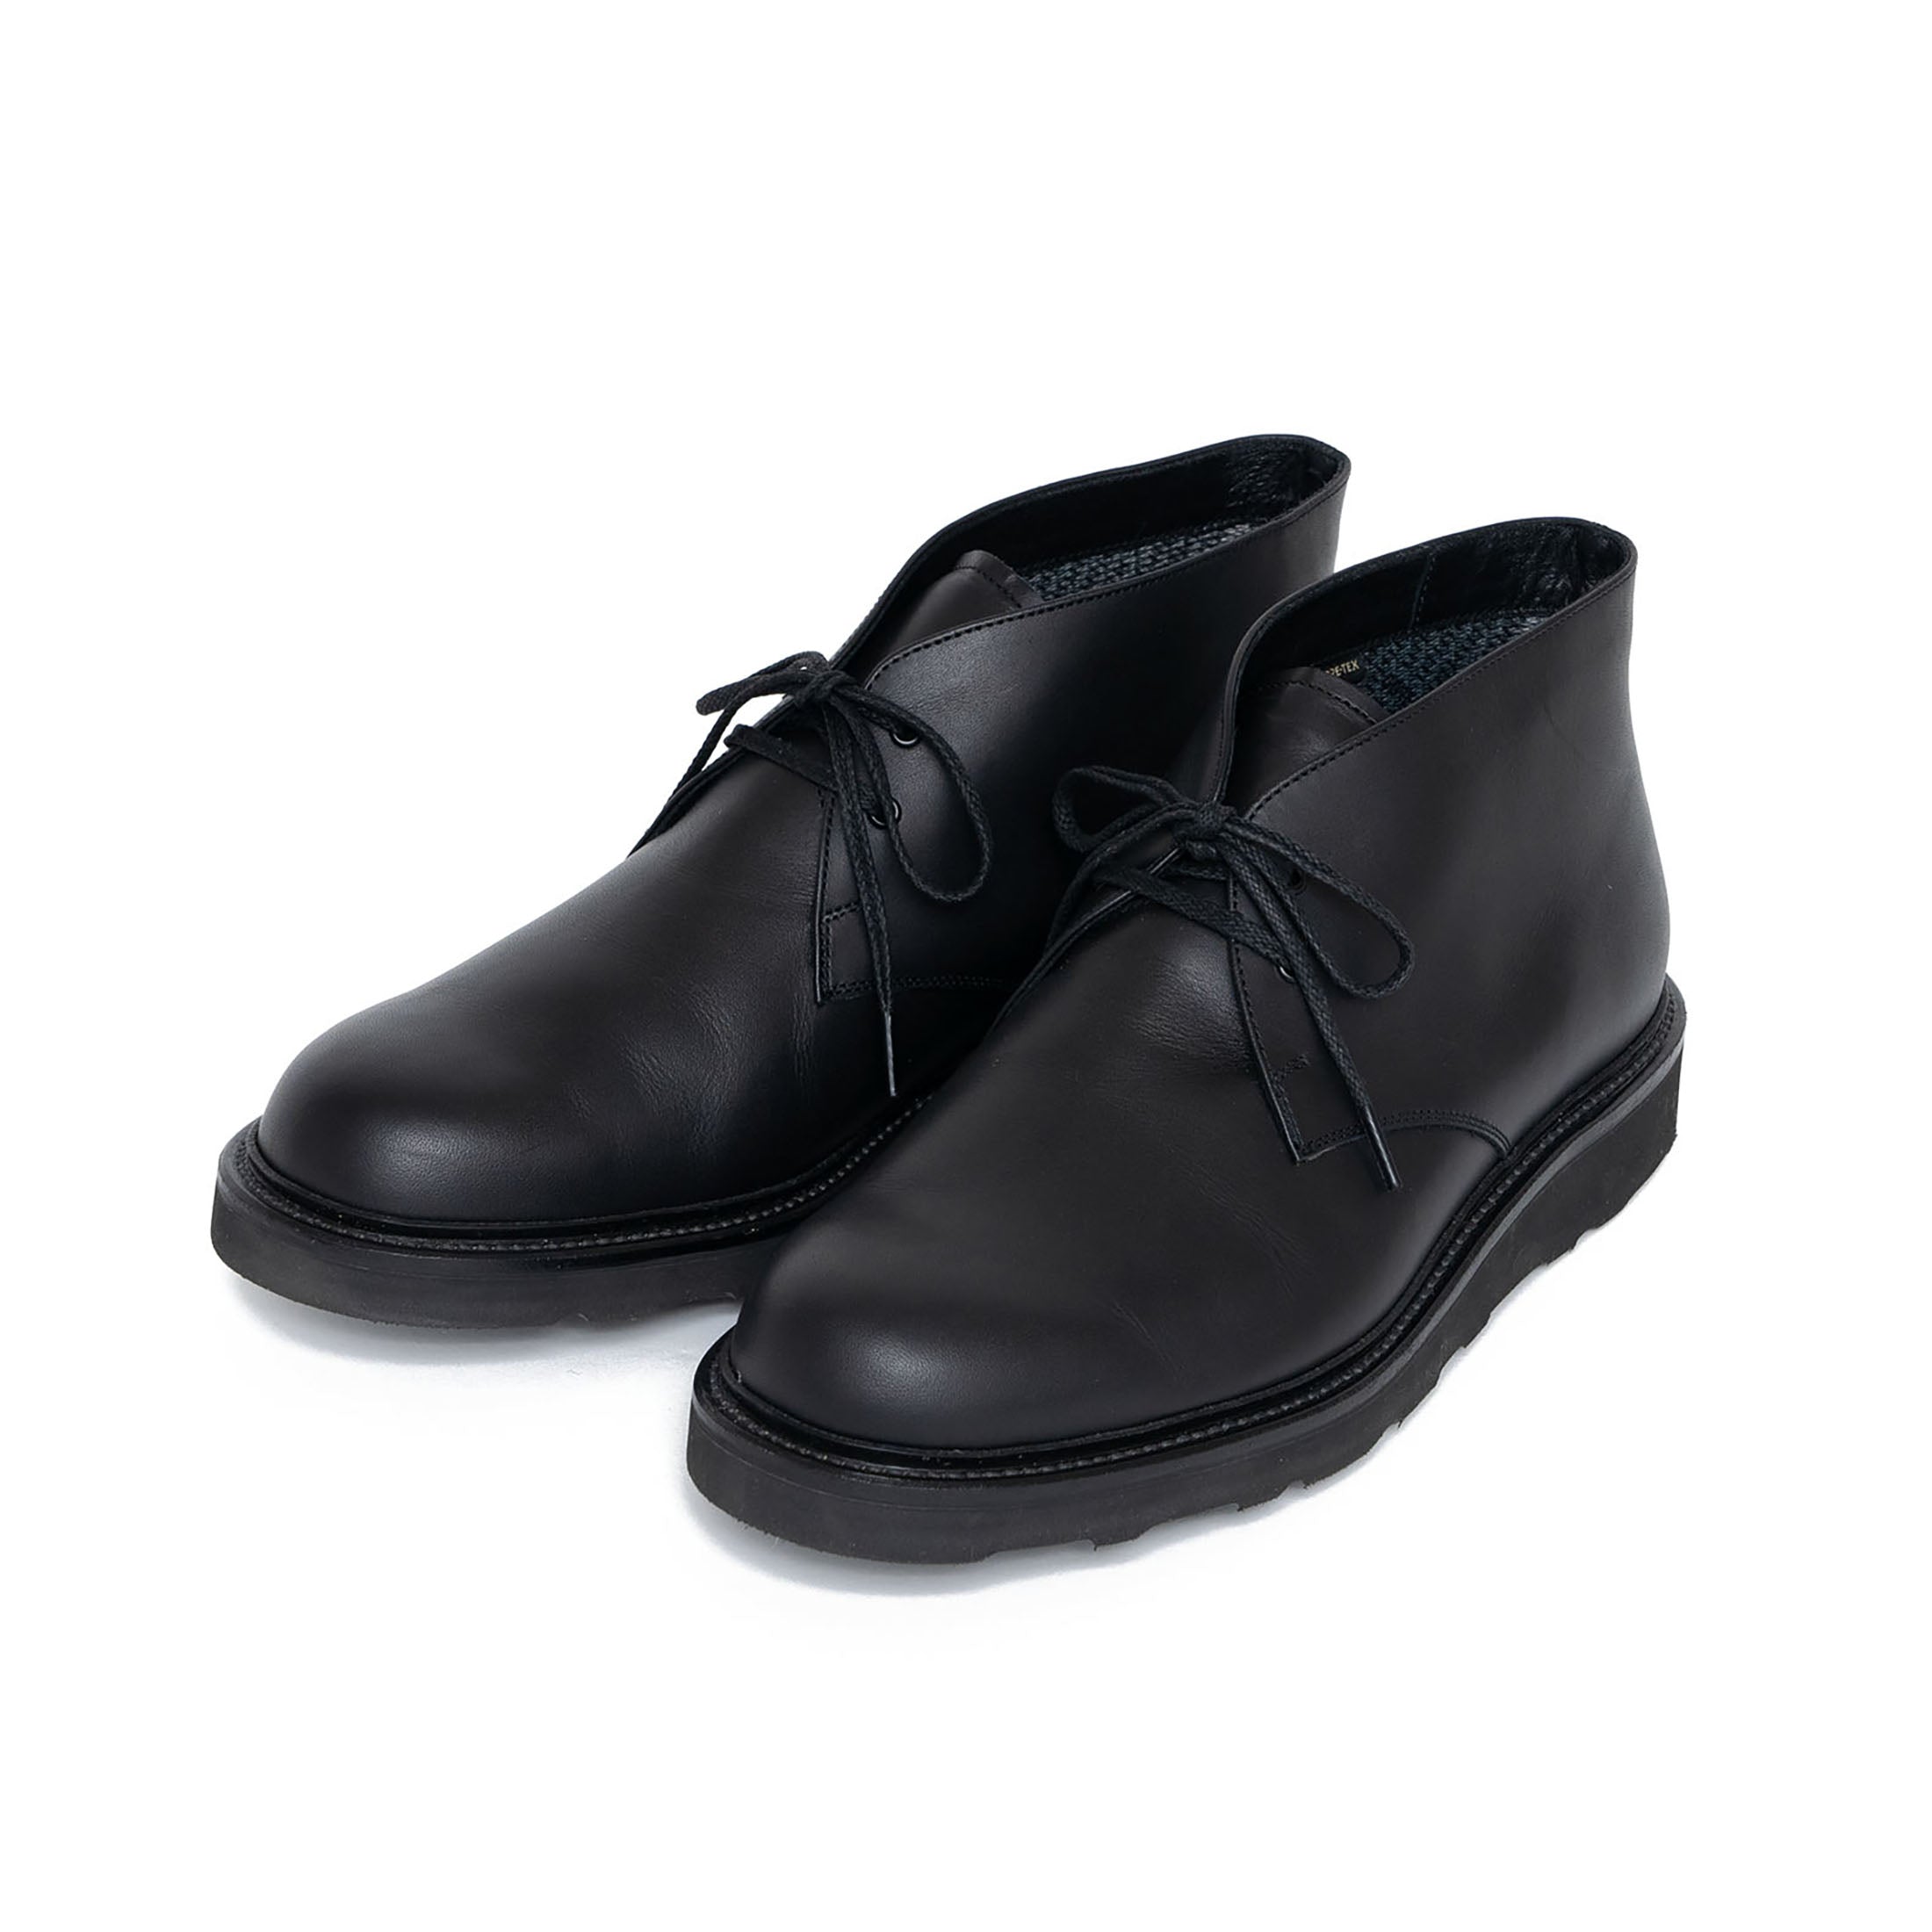 UNISEX – REGAL Shoe & Co.